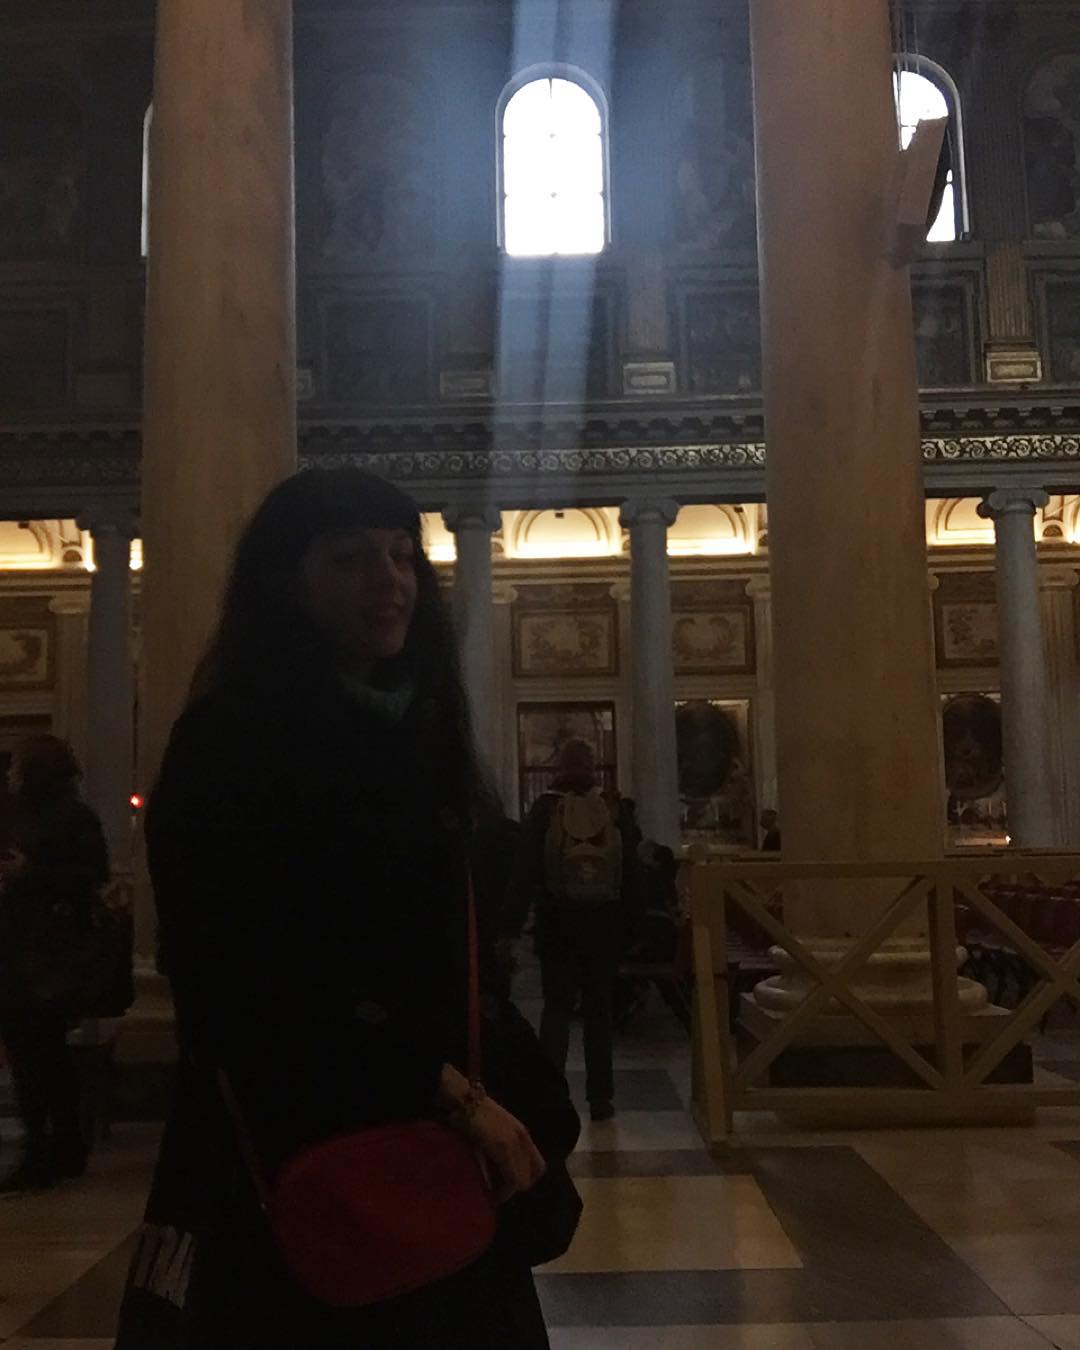 Aquí estoy, de visita a la puerta santa de la basílica romana de Santa Maria Maggiore